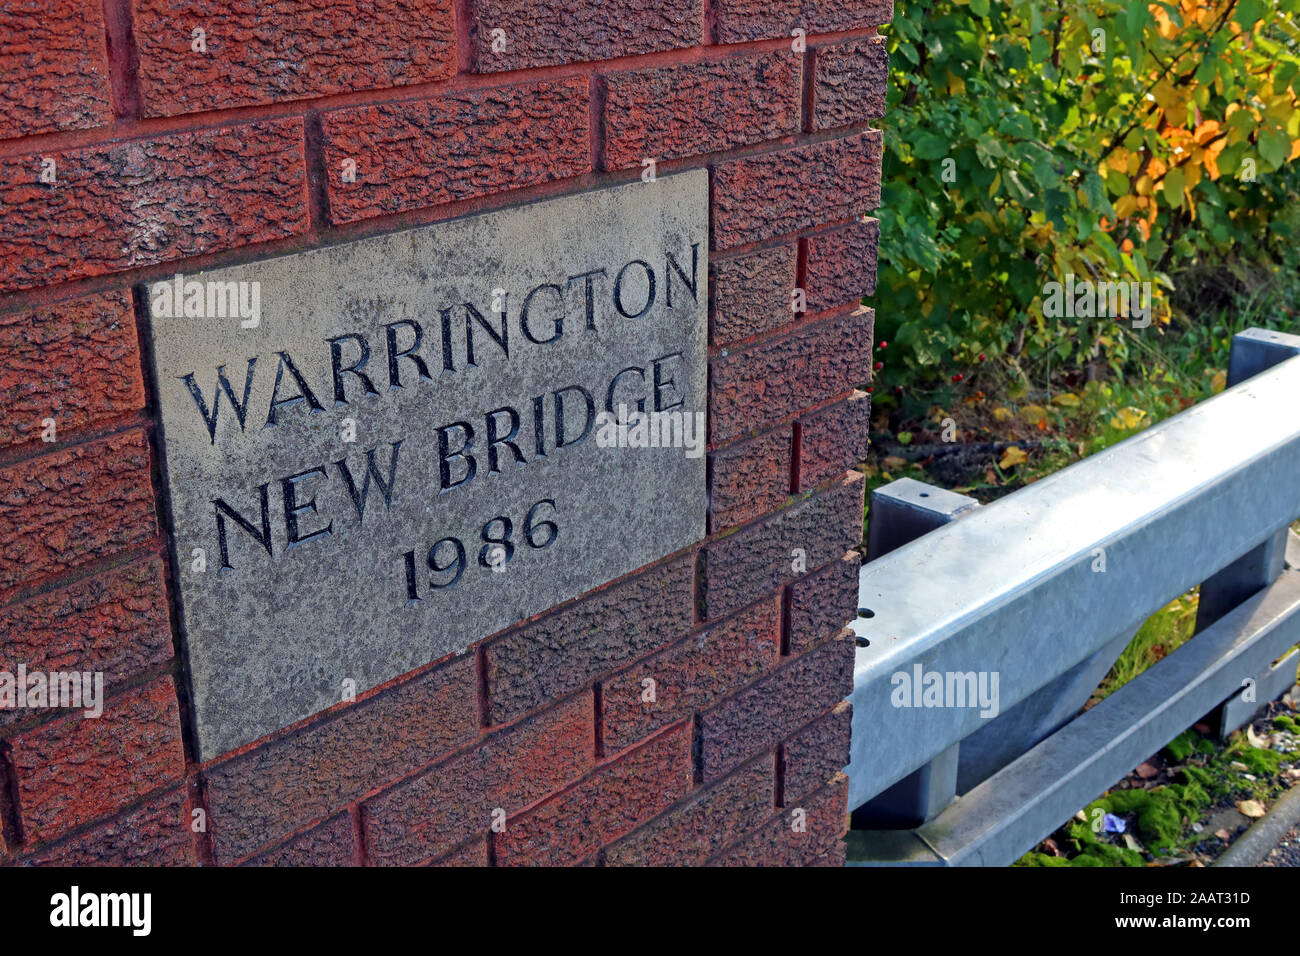 Nouveau pont de Warrington, 1986 Oct 2019 Bridgefoot Warrington, WA1 1WA - Marée haute et l'inondation de la rivière Mersey Crossing, Cheshire, England, UK Banque D'Images